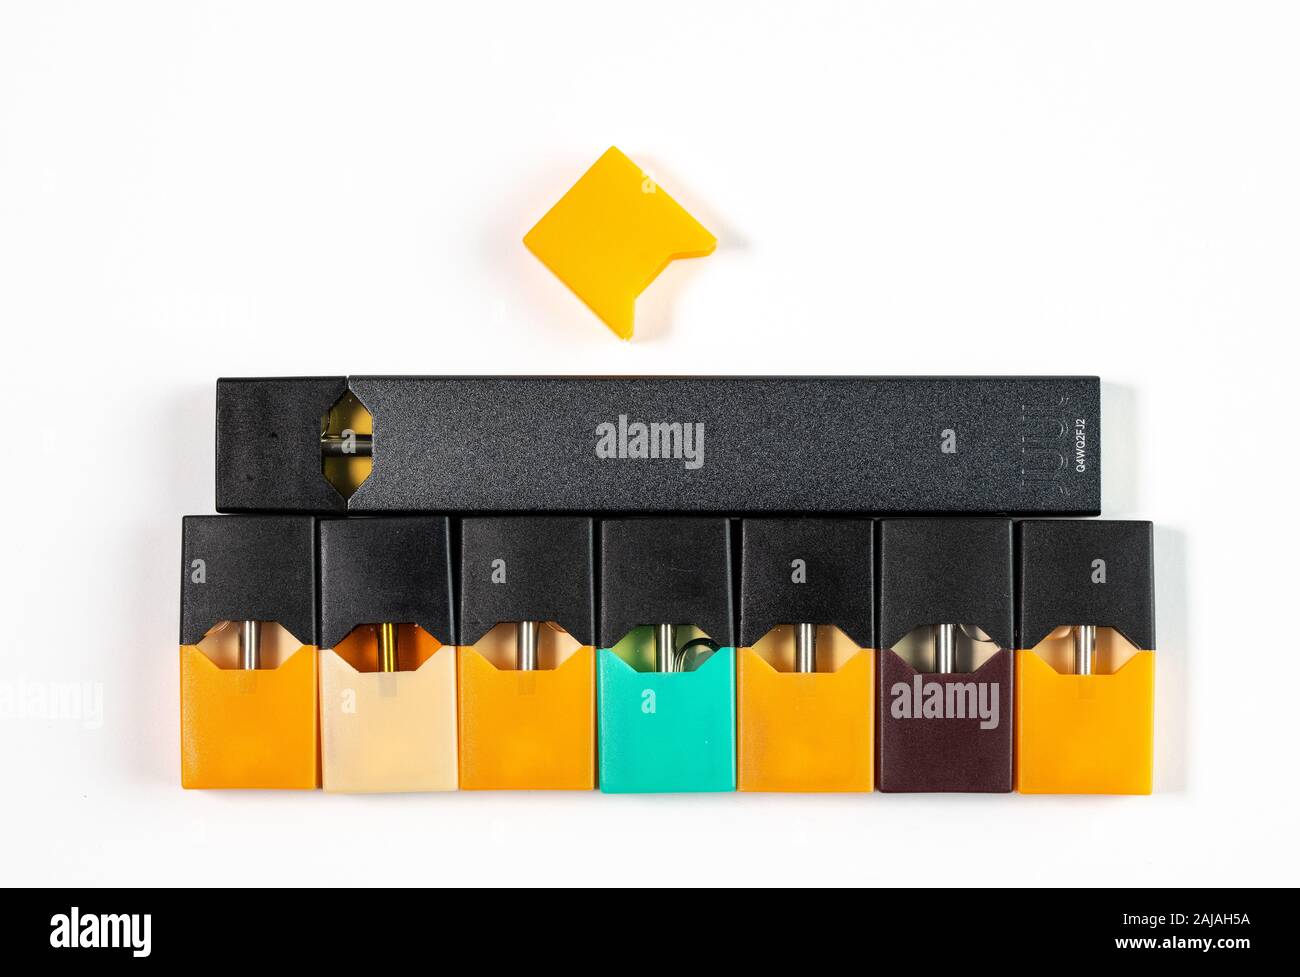 Morgantown, WV - 3 janvier 2020 : nectar de mangue et autres Juul arômes pour système nicotine vaping interdite dans l'USA Banque D'Images